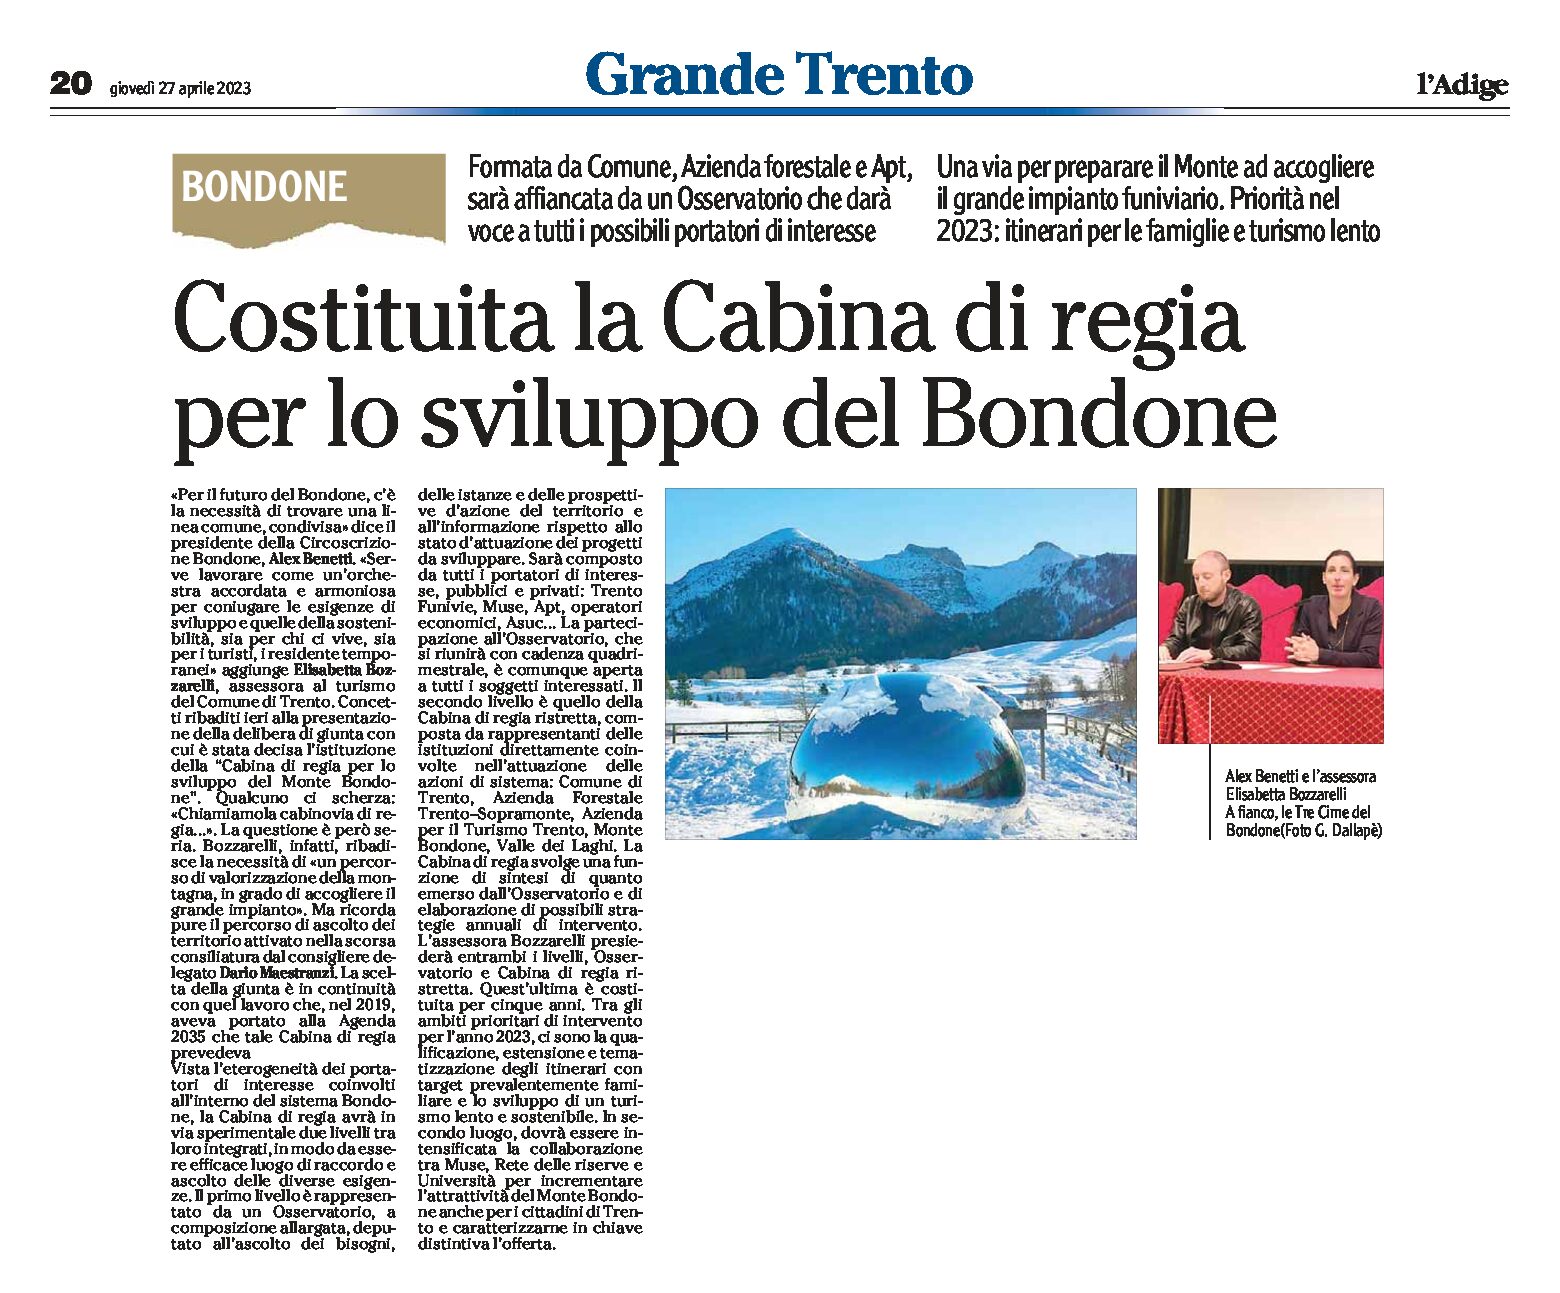 Trento: costituita la Cabina di regia per lo sviluppo del Monte Bondone